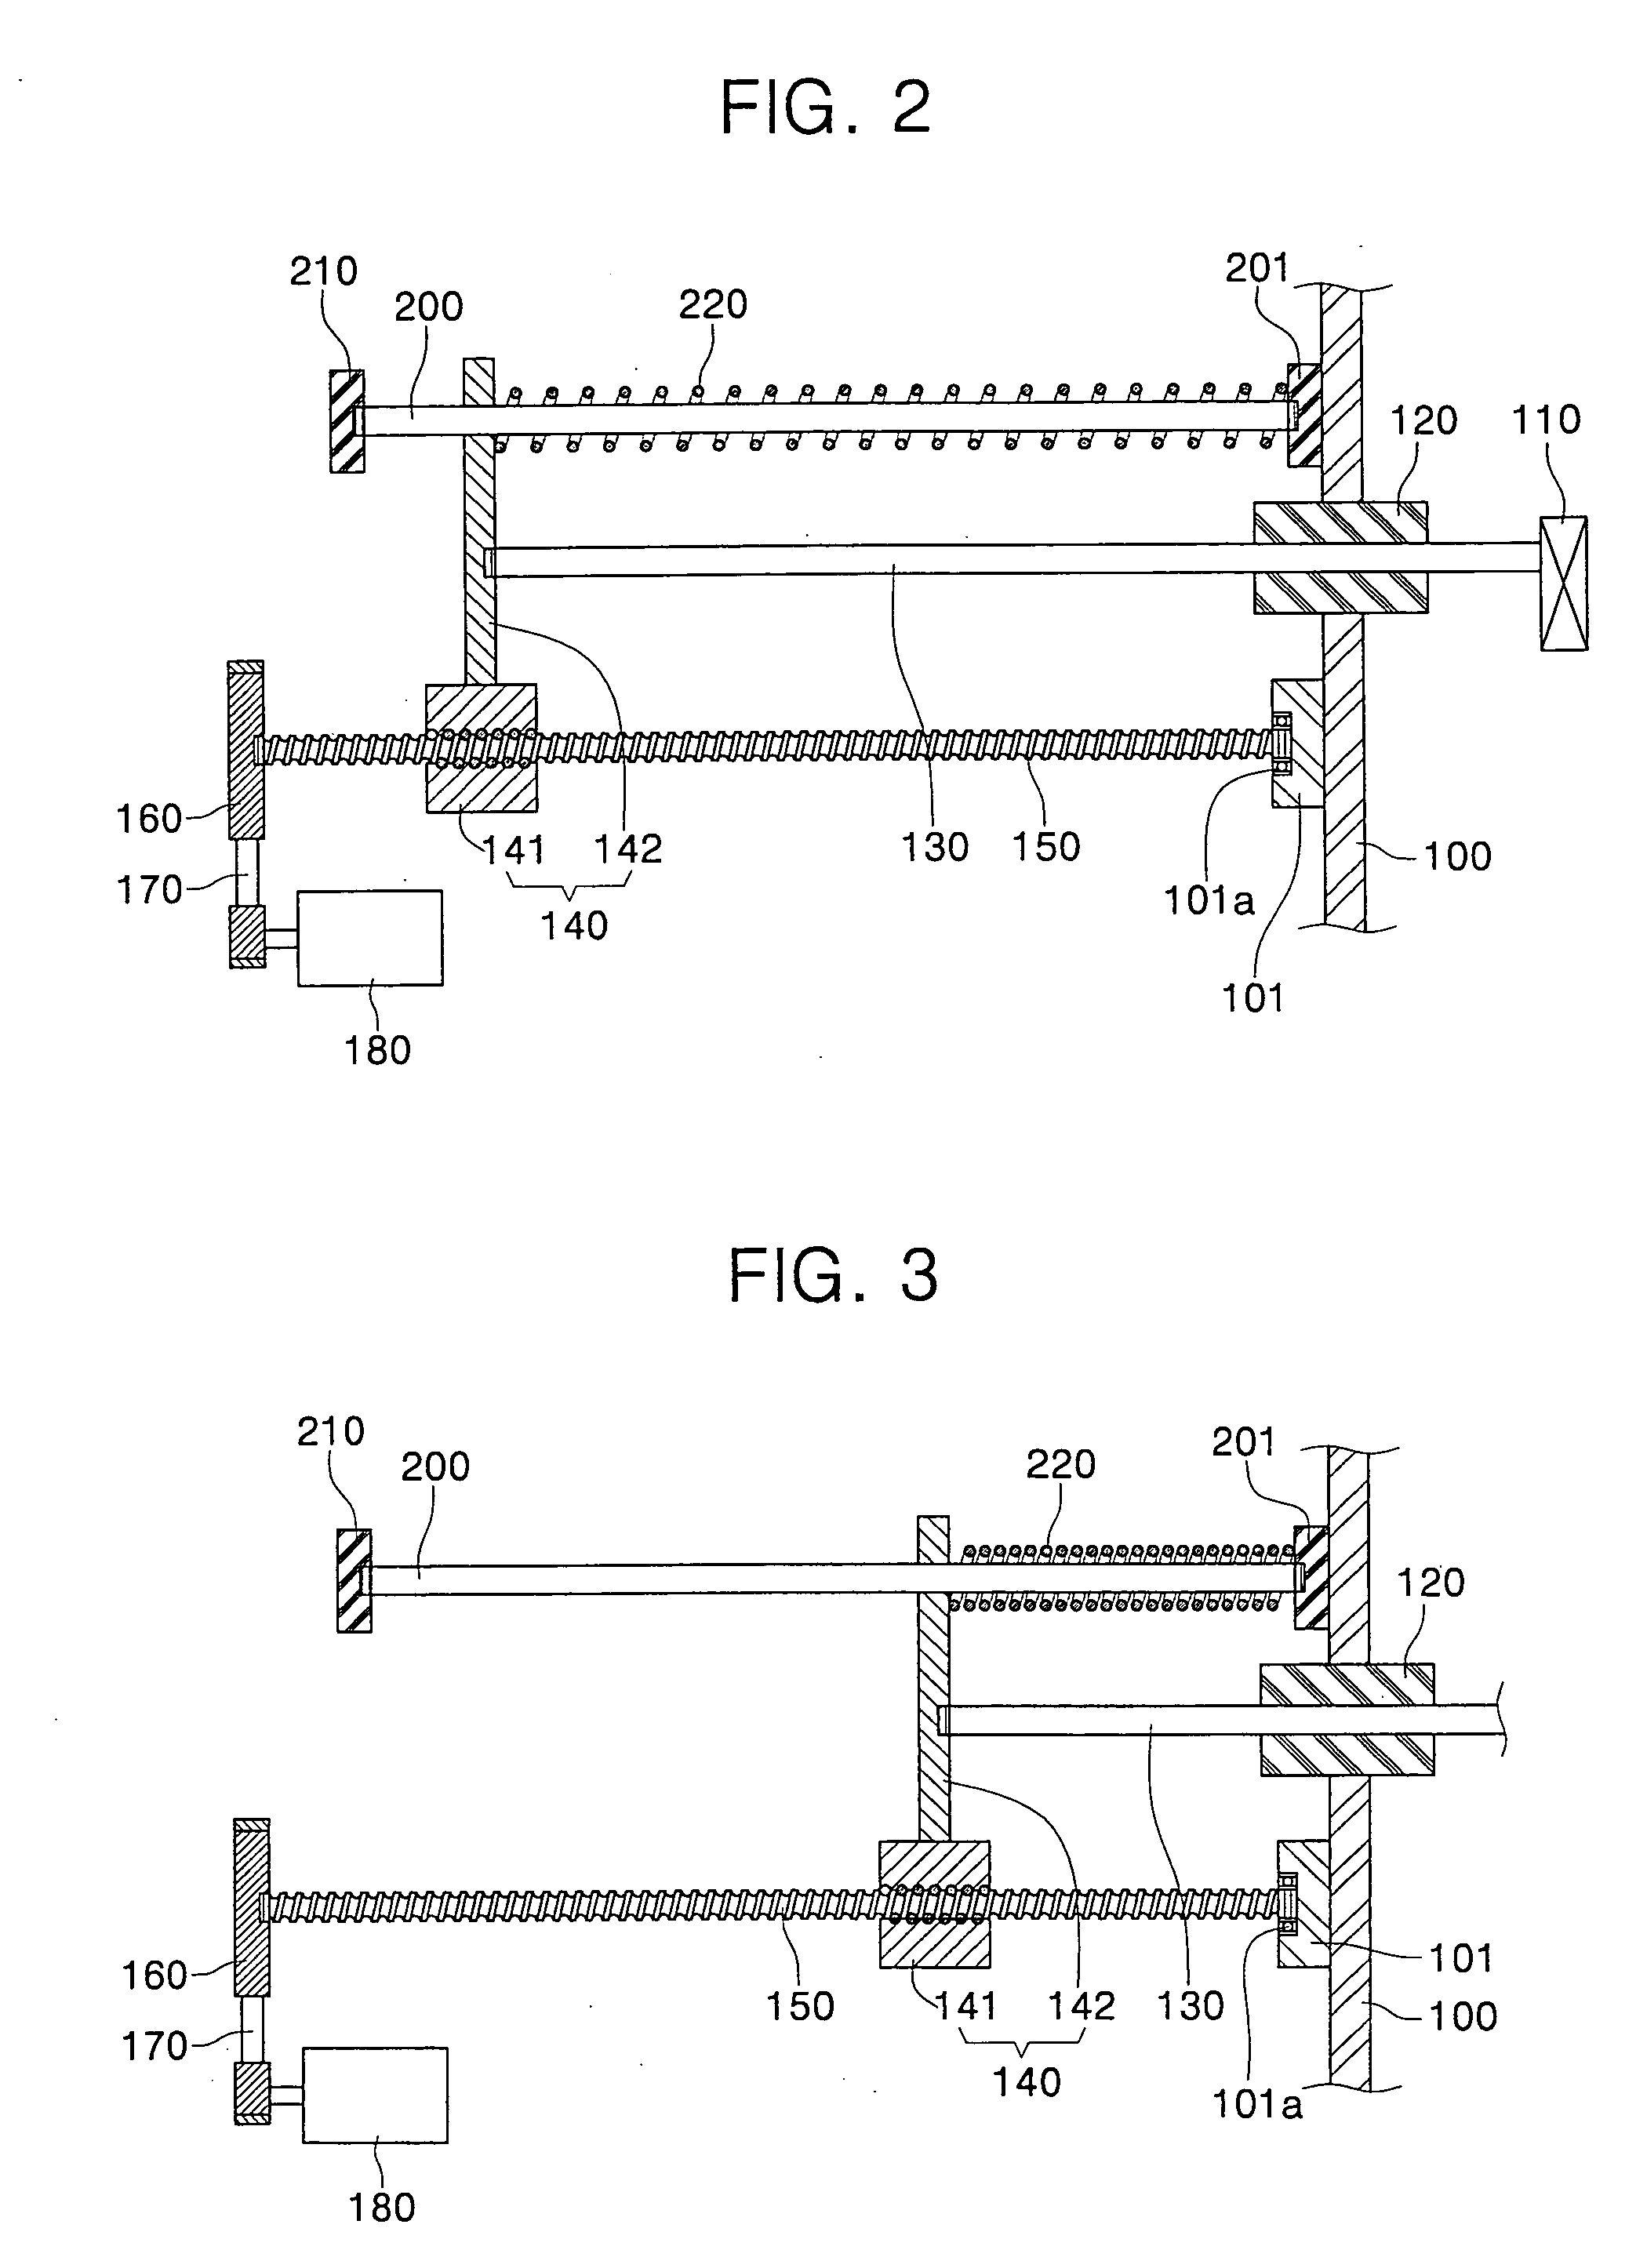 Faraday assembly of ion implantation apparatus